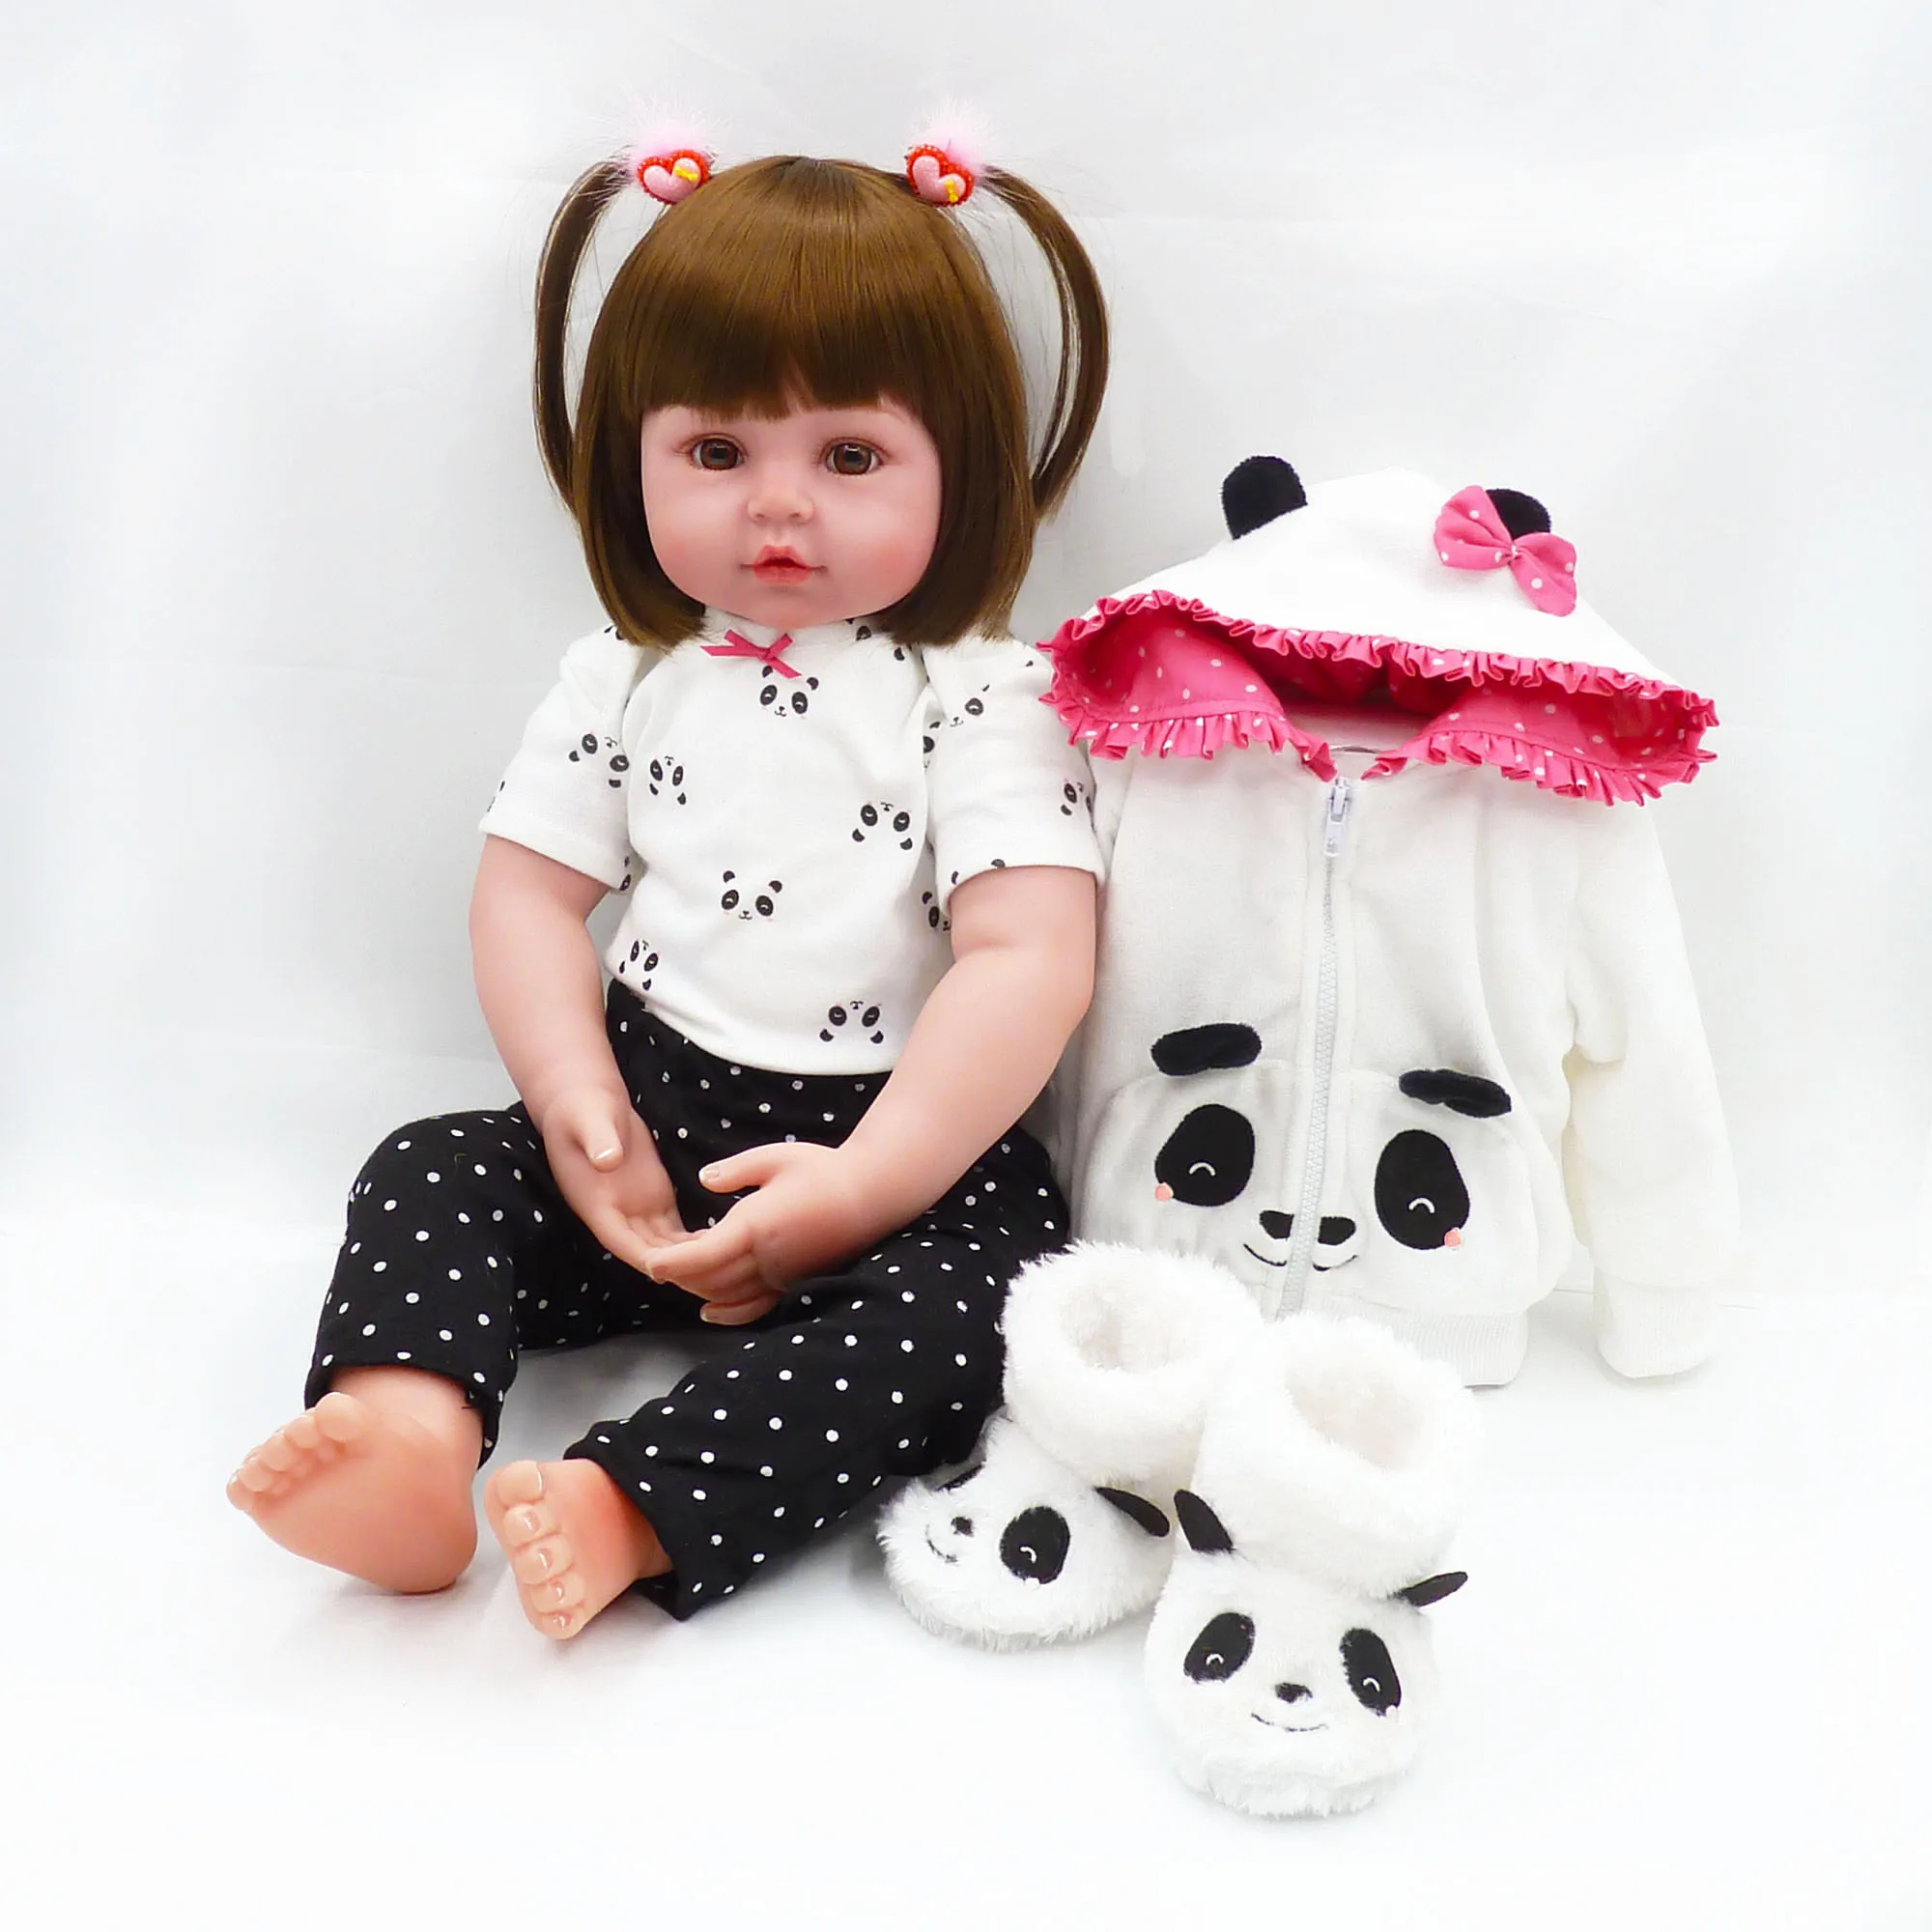 Reborn Dolls de Silicone девушка тело 47 см Очаровательная кукла игрушки для девочек boneca Baby Bebe Кукла День рождения/Рождественский подарок